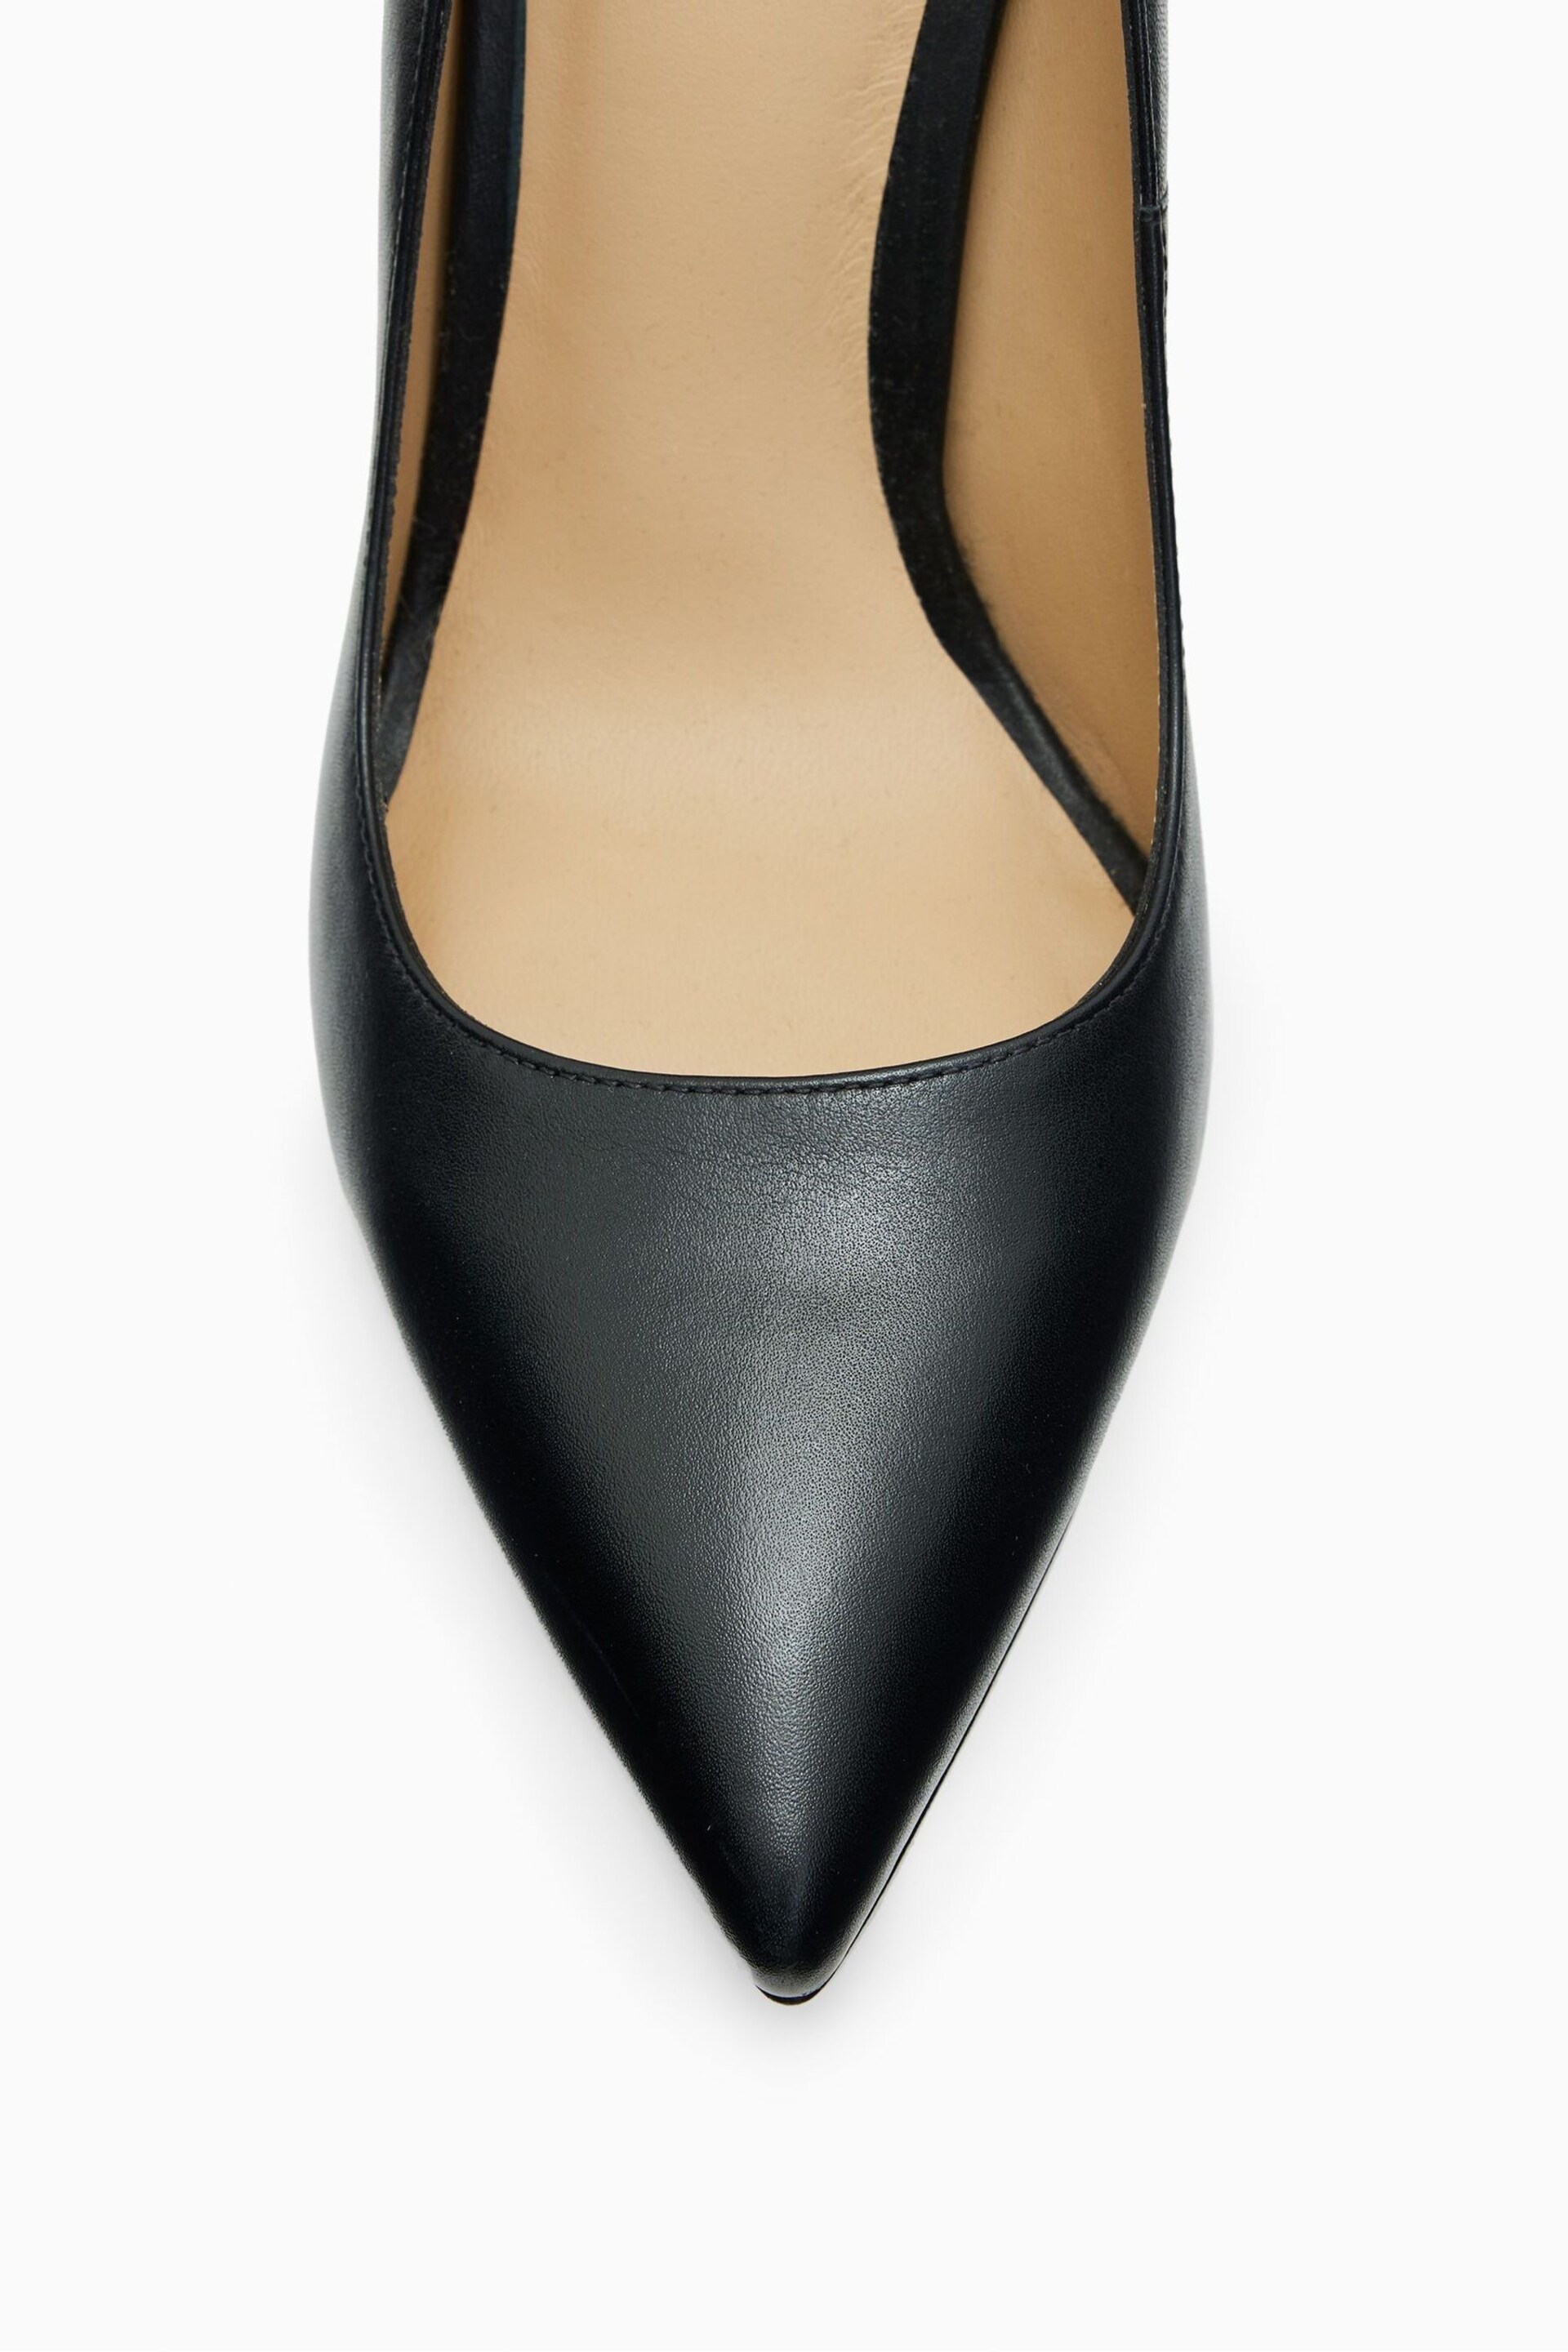 AllSaints Black Nova Court Shoes - Image 5 of 7